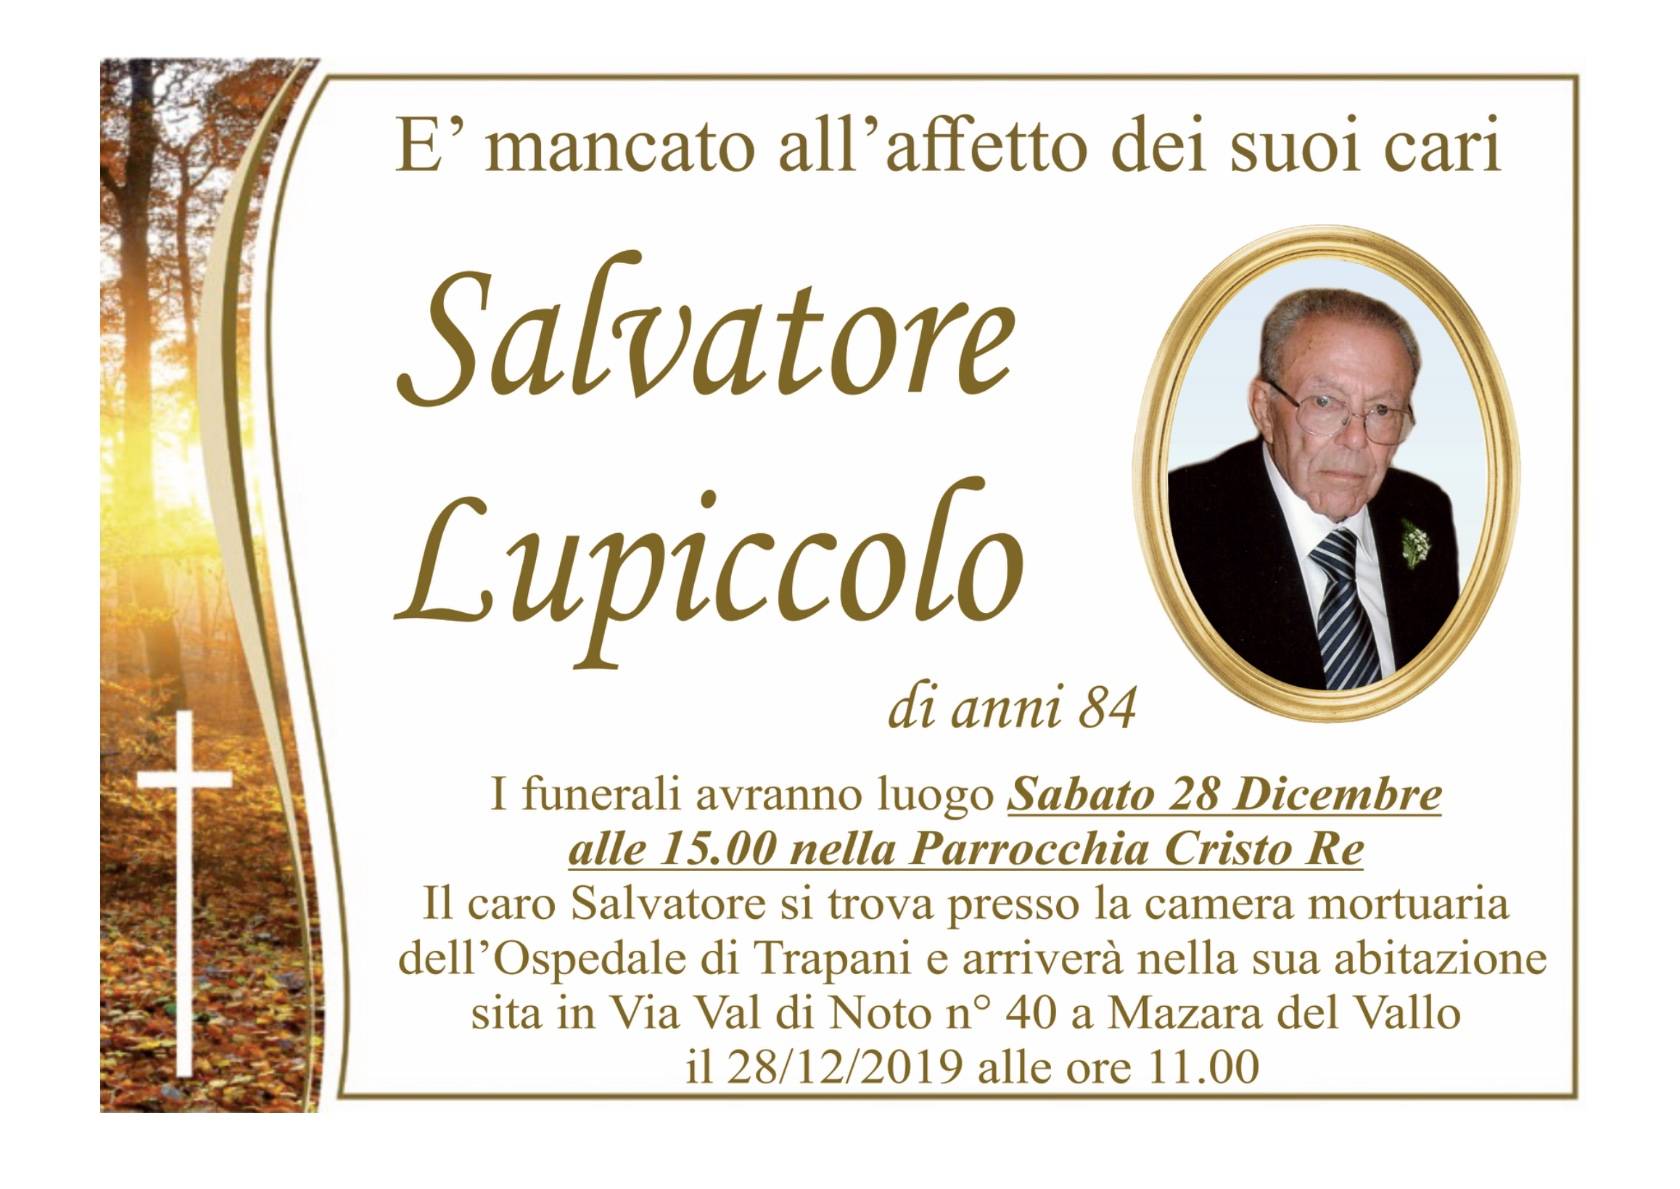 Salvatore Lupiccolo